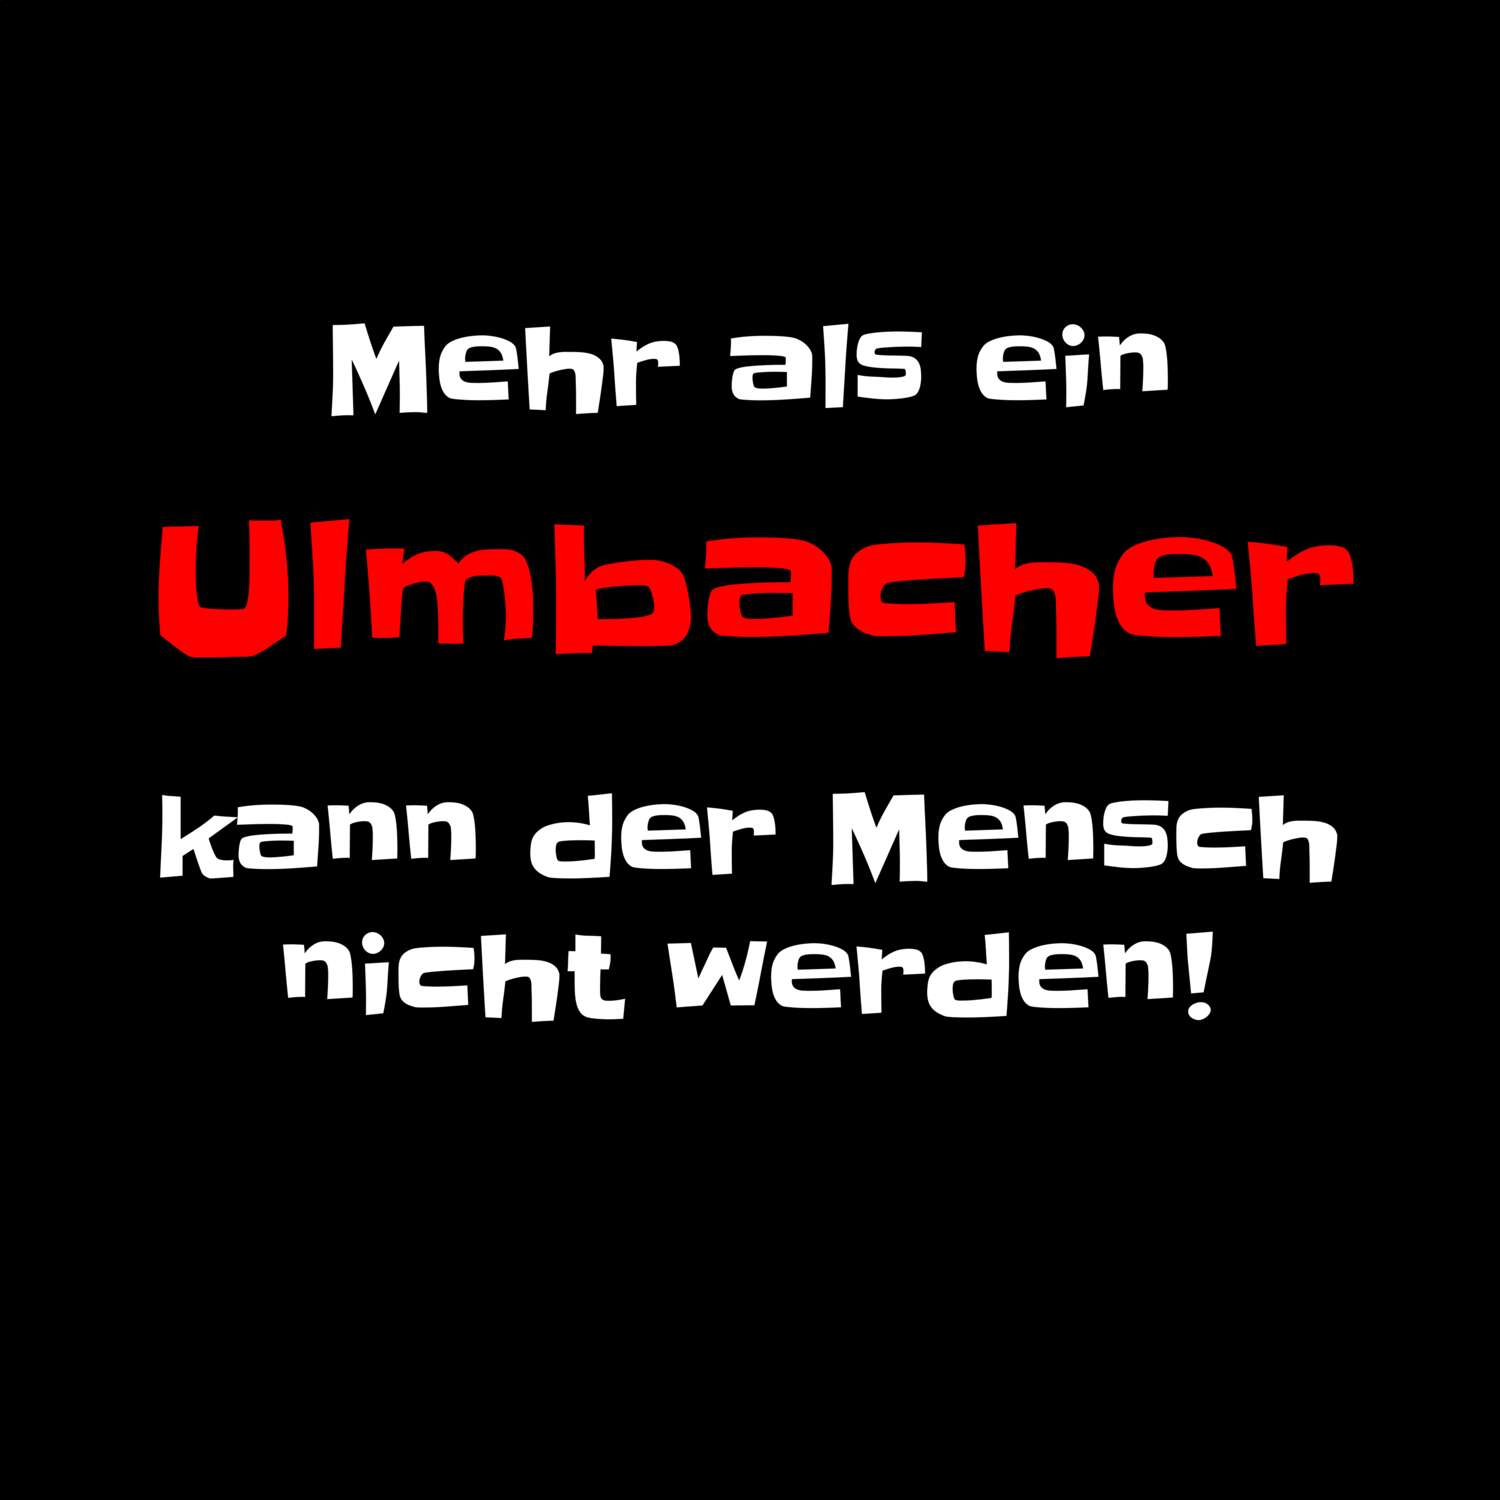 Ulmbach T-Shirt »Mehr als ein«